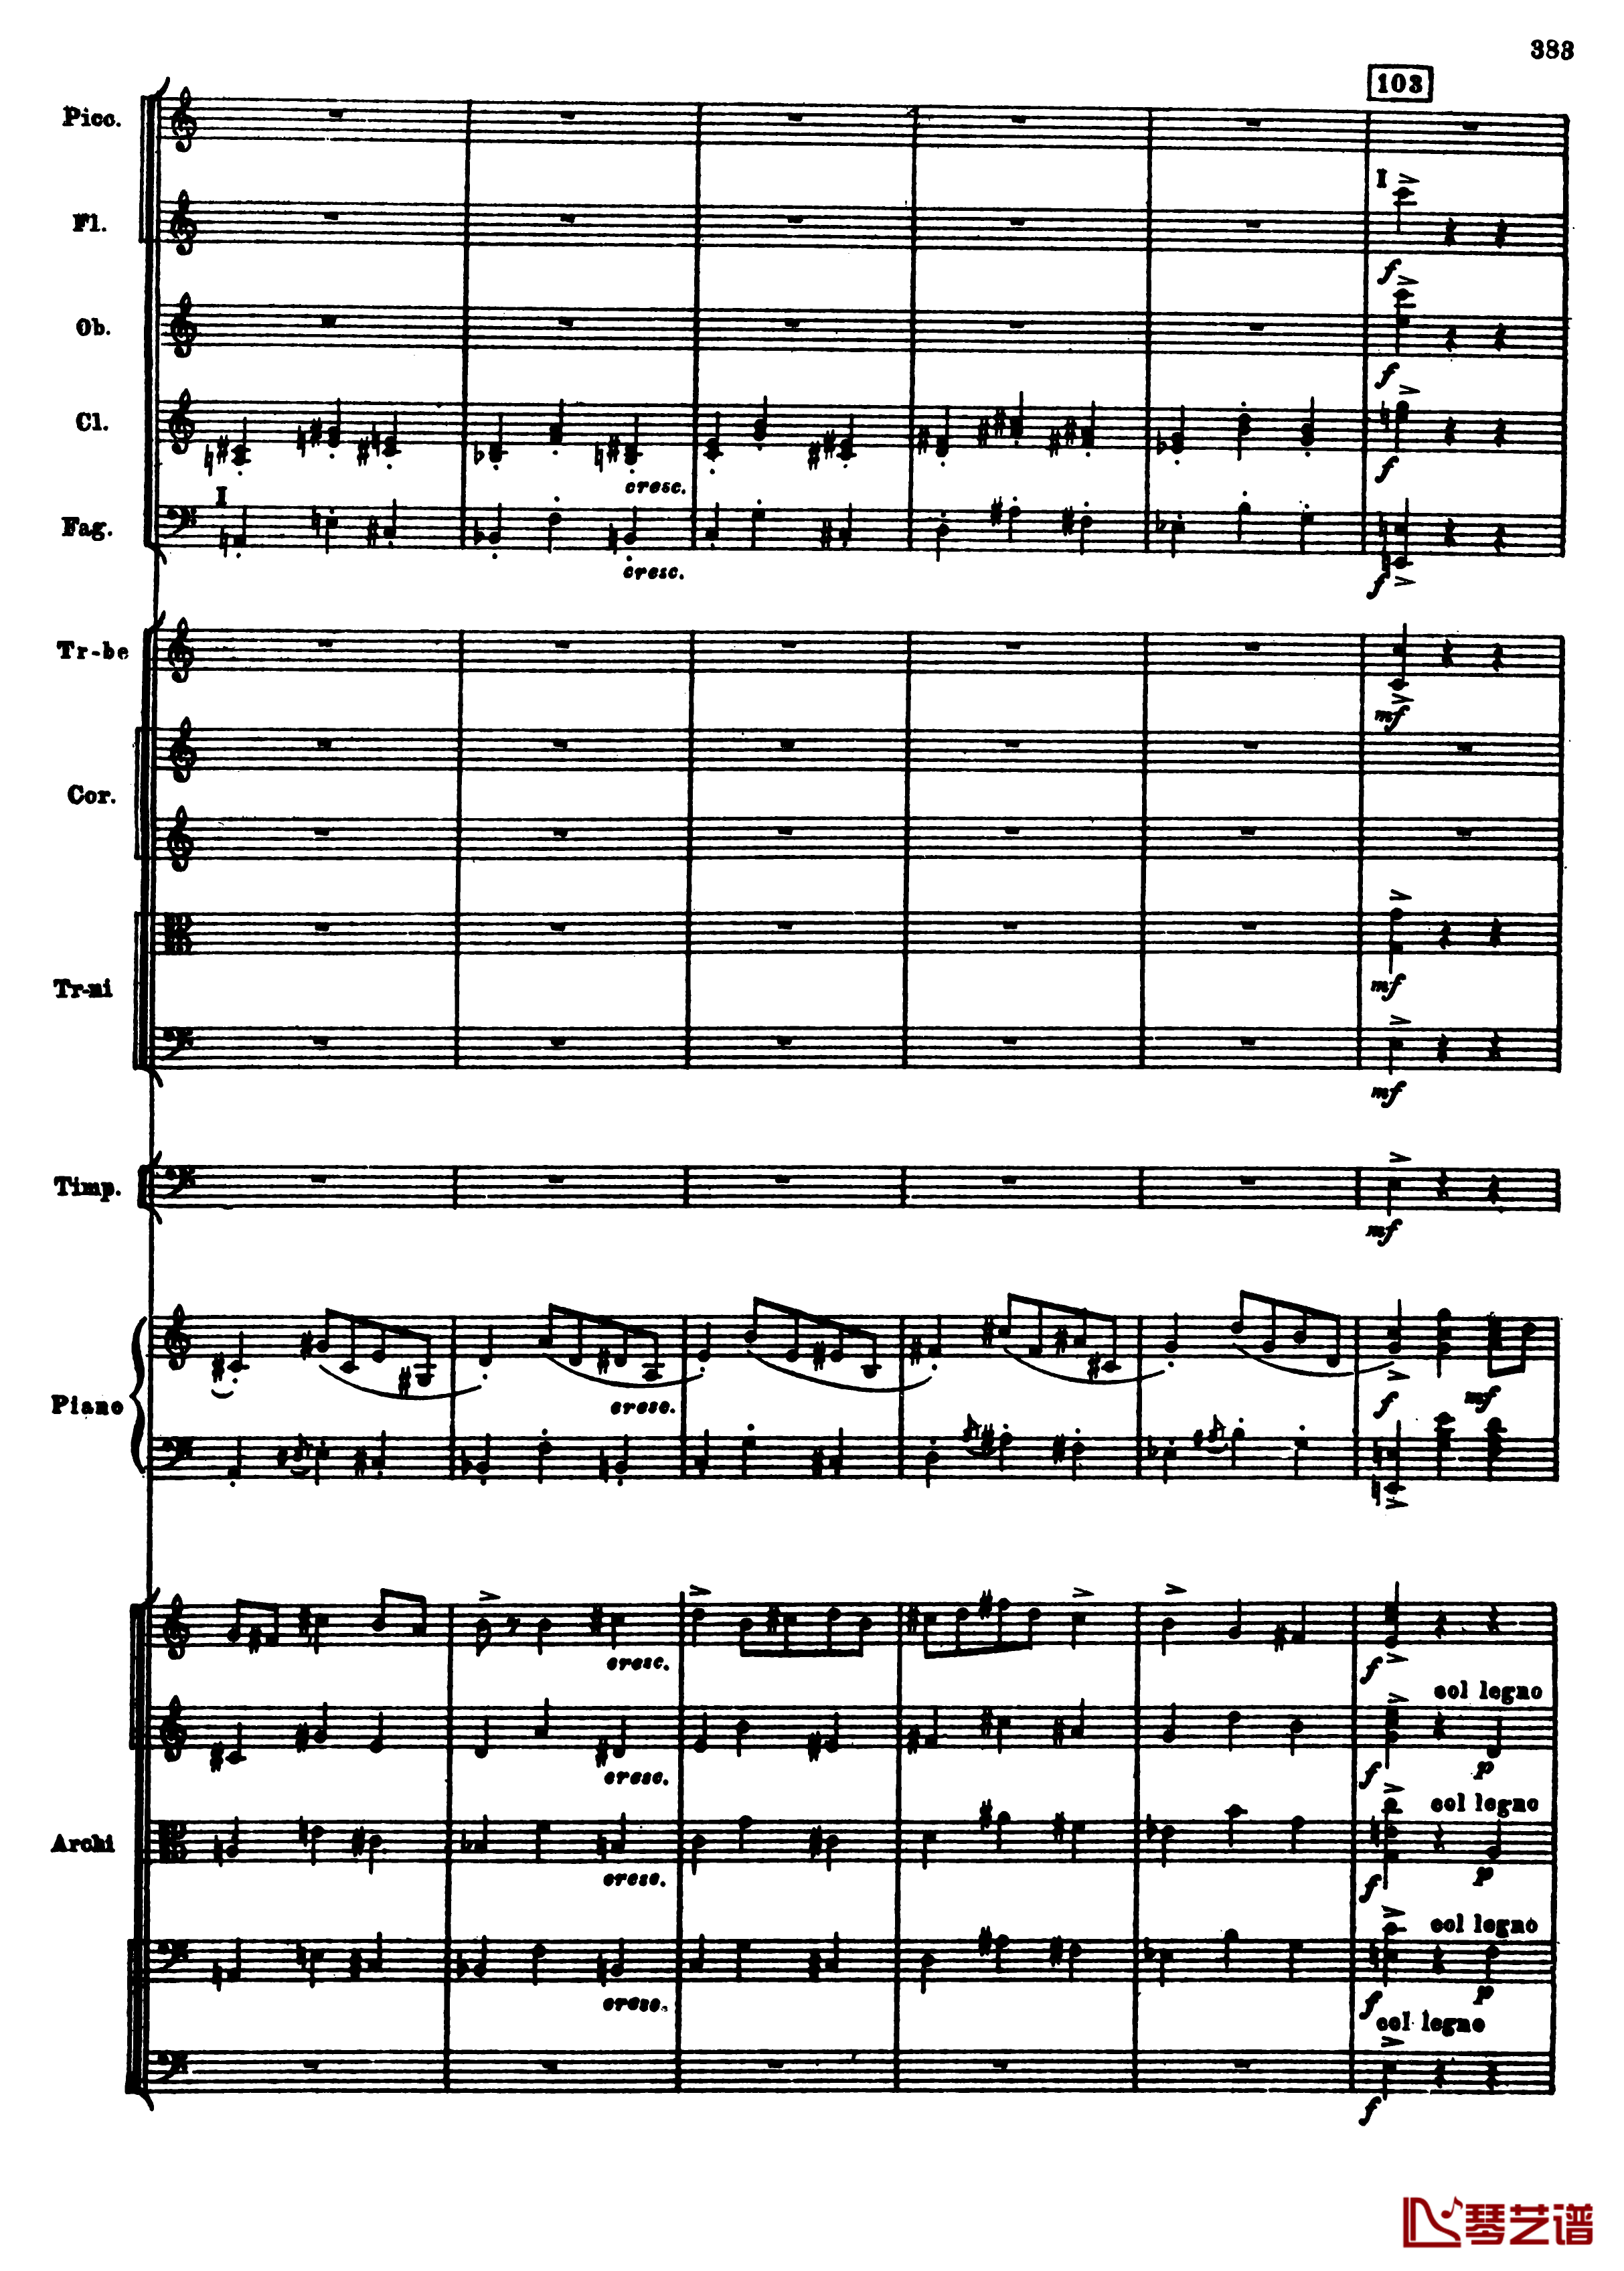 普罗科菲耶夫第三钢琴协奏曲钢琴谱-总谱-普罗科非耶夫115